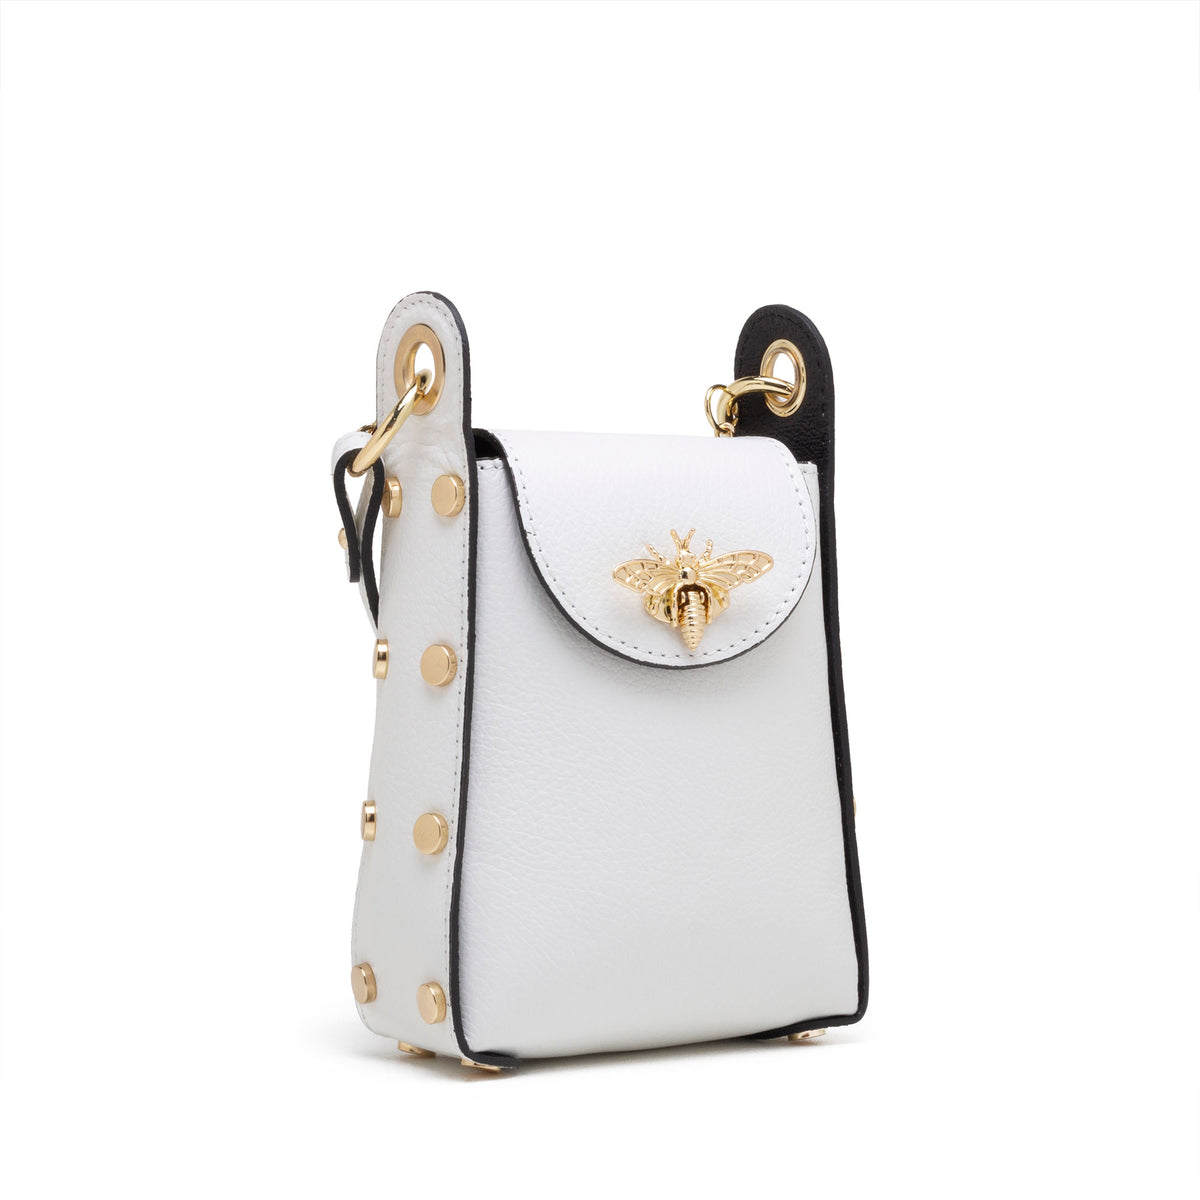 Brazos Chap Bag – Espuela Design Co.